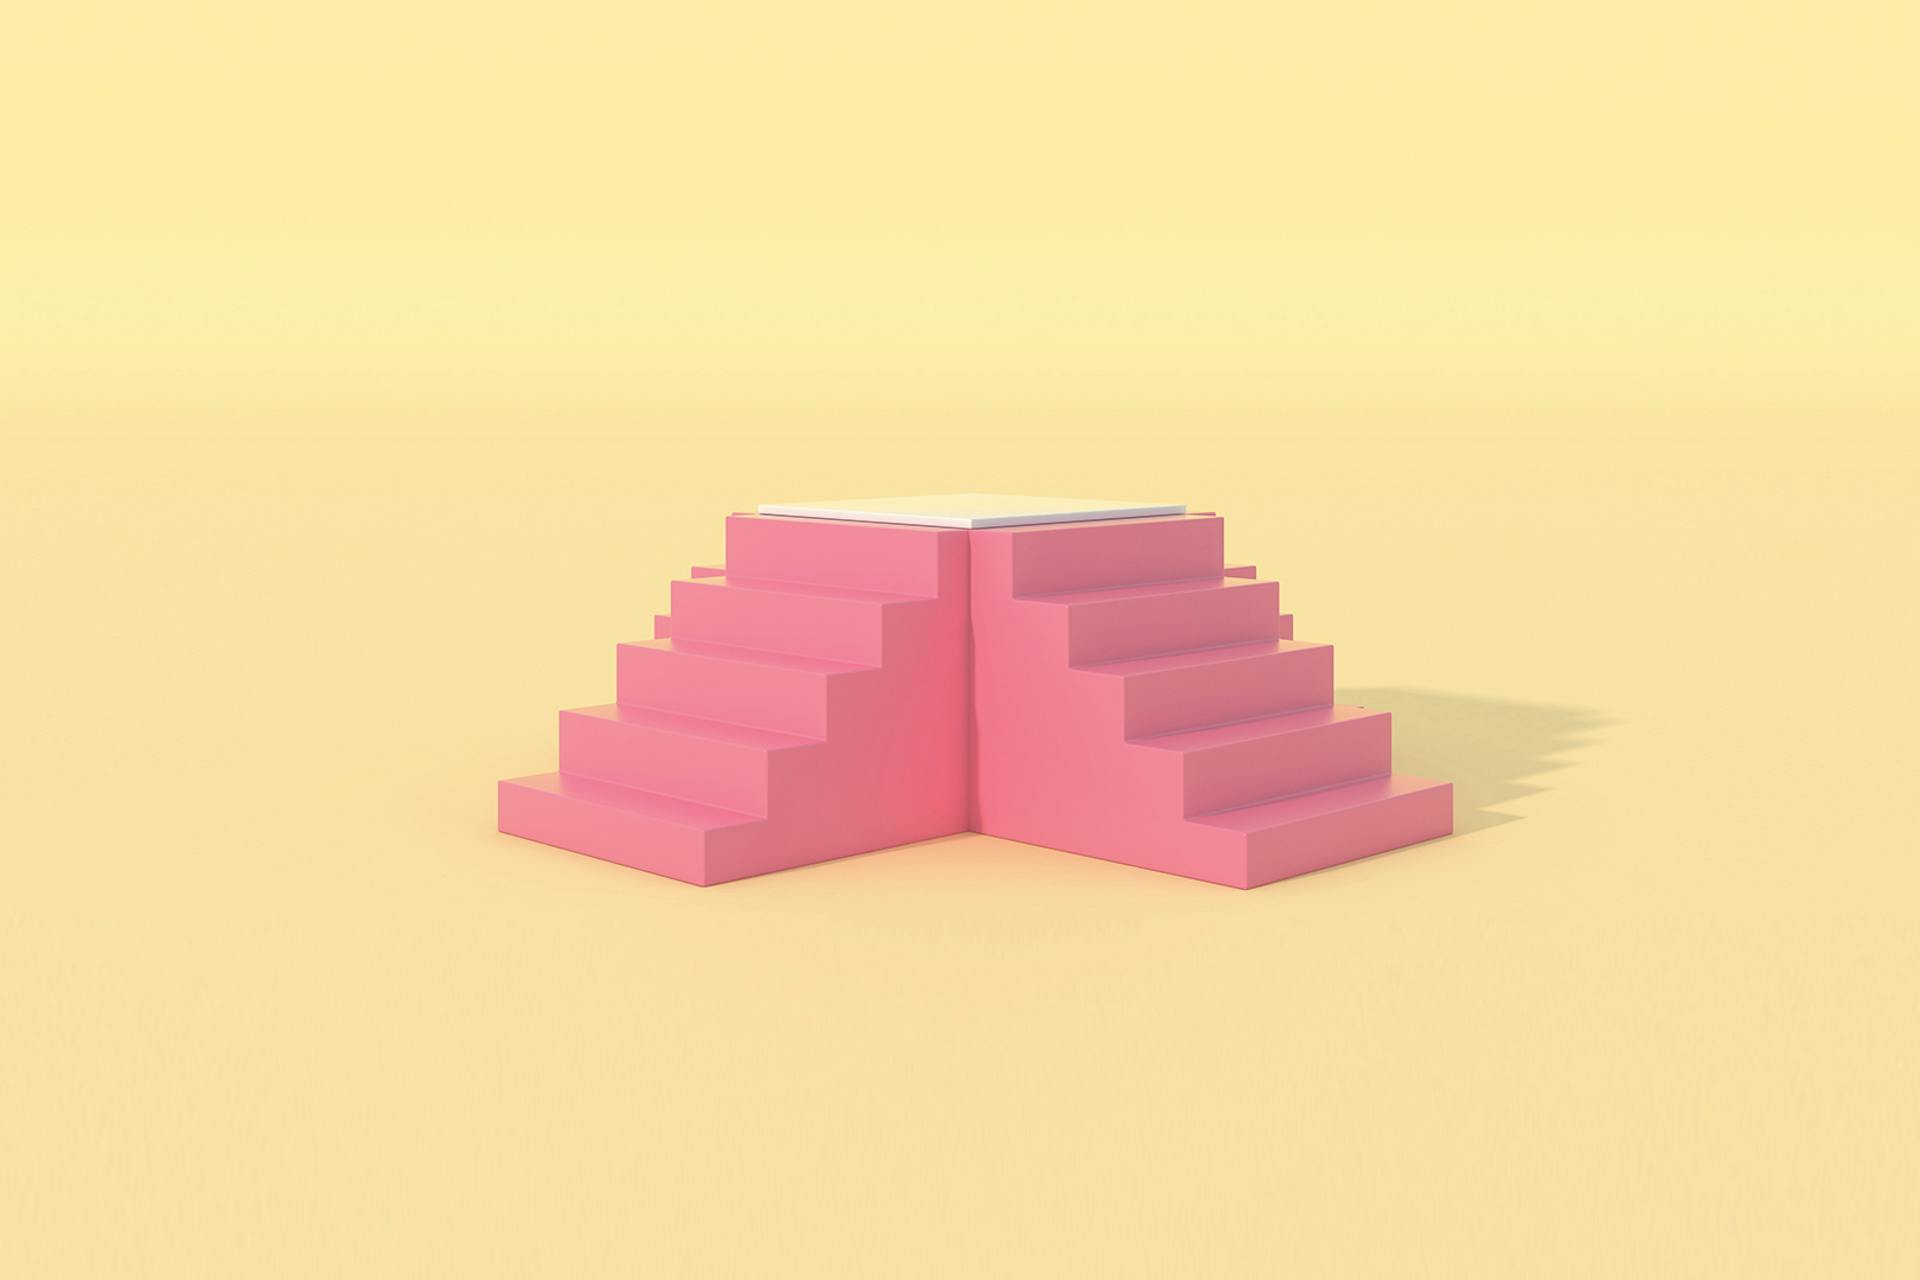 Deux blocs de marches d'escalier en 3D roses, sur fond jaune 